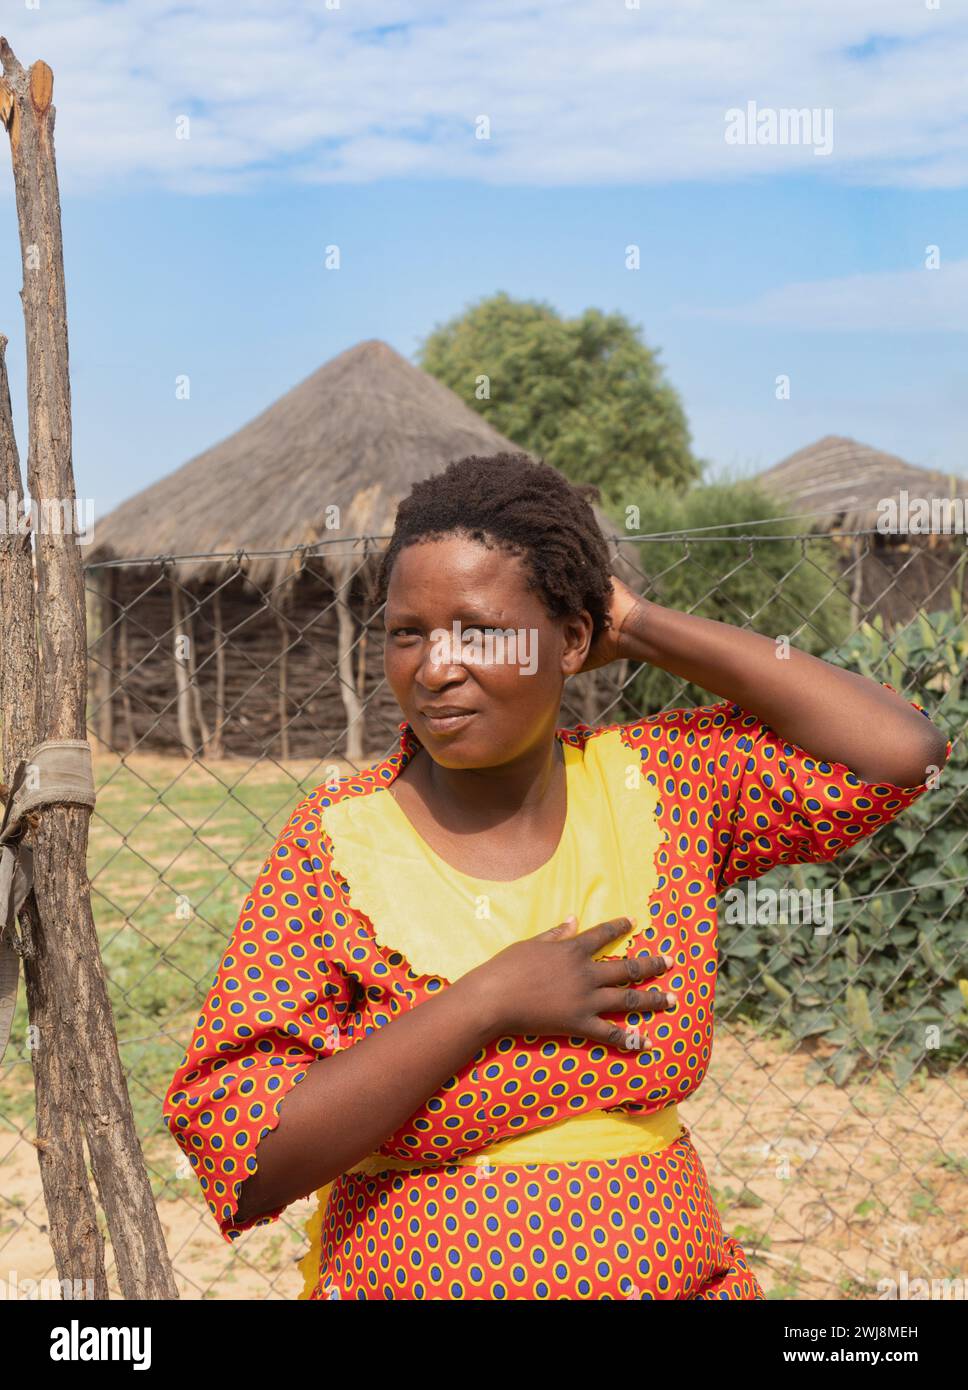 femme africaine dans le village, robe traditionnelle, debout dans la cour, maisons de boue avec toit de chaume en arrière-plan Banque D'Images